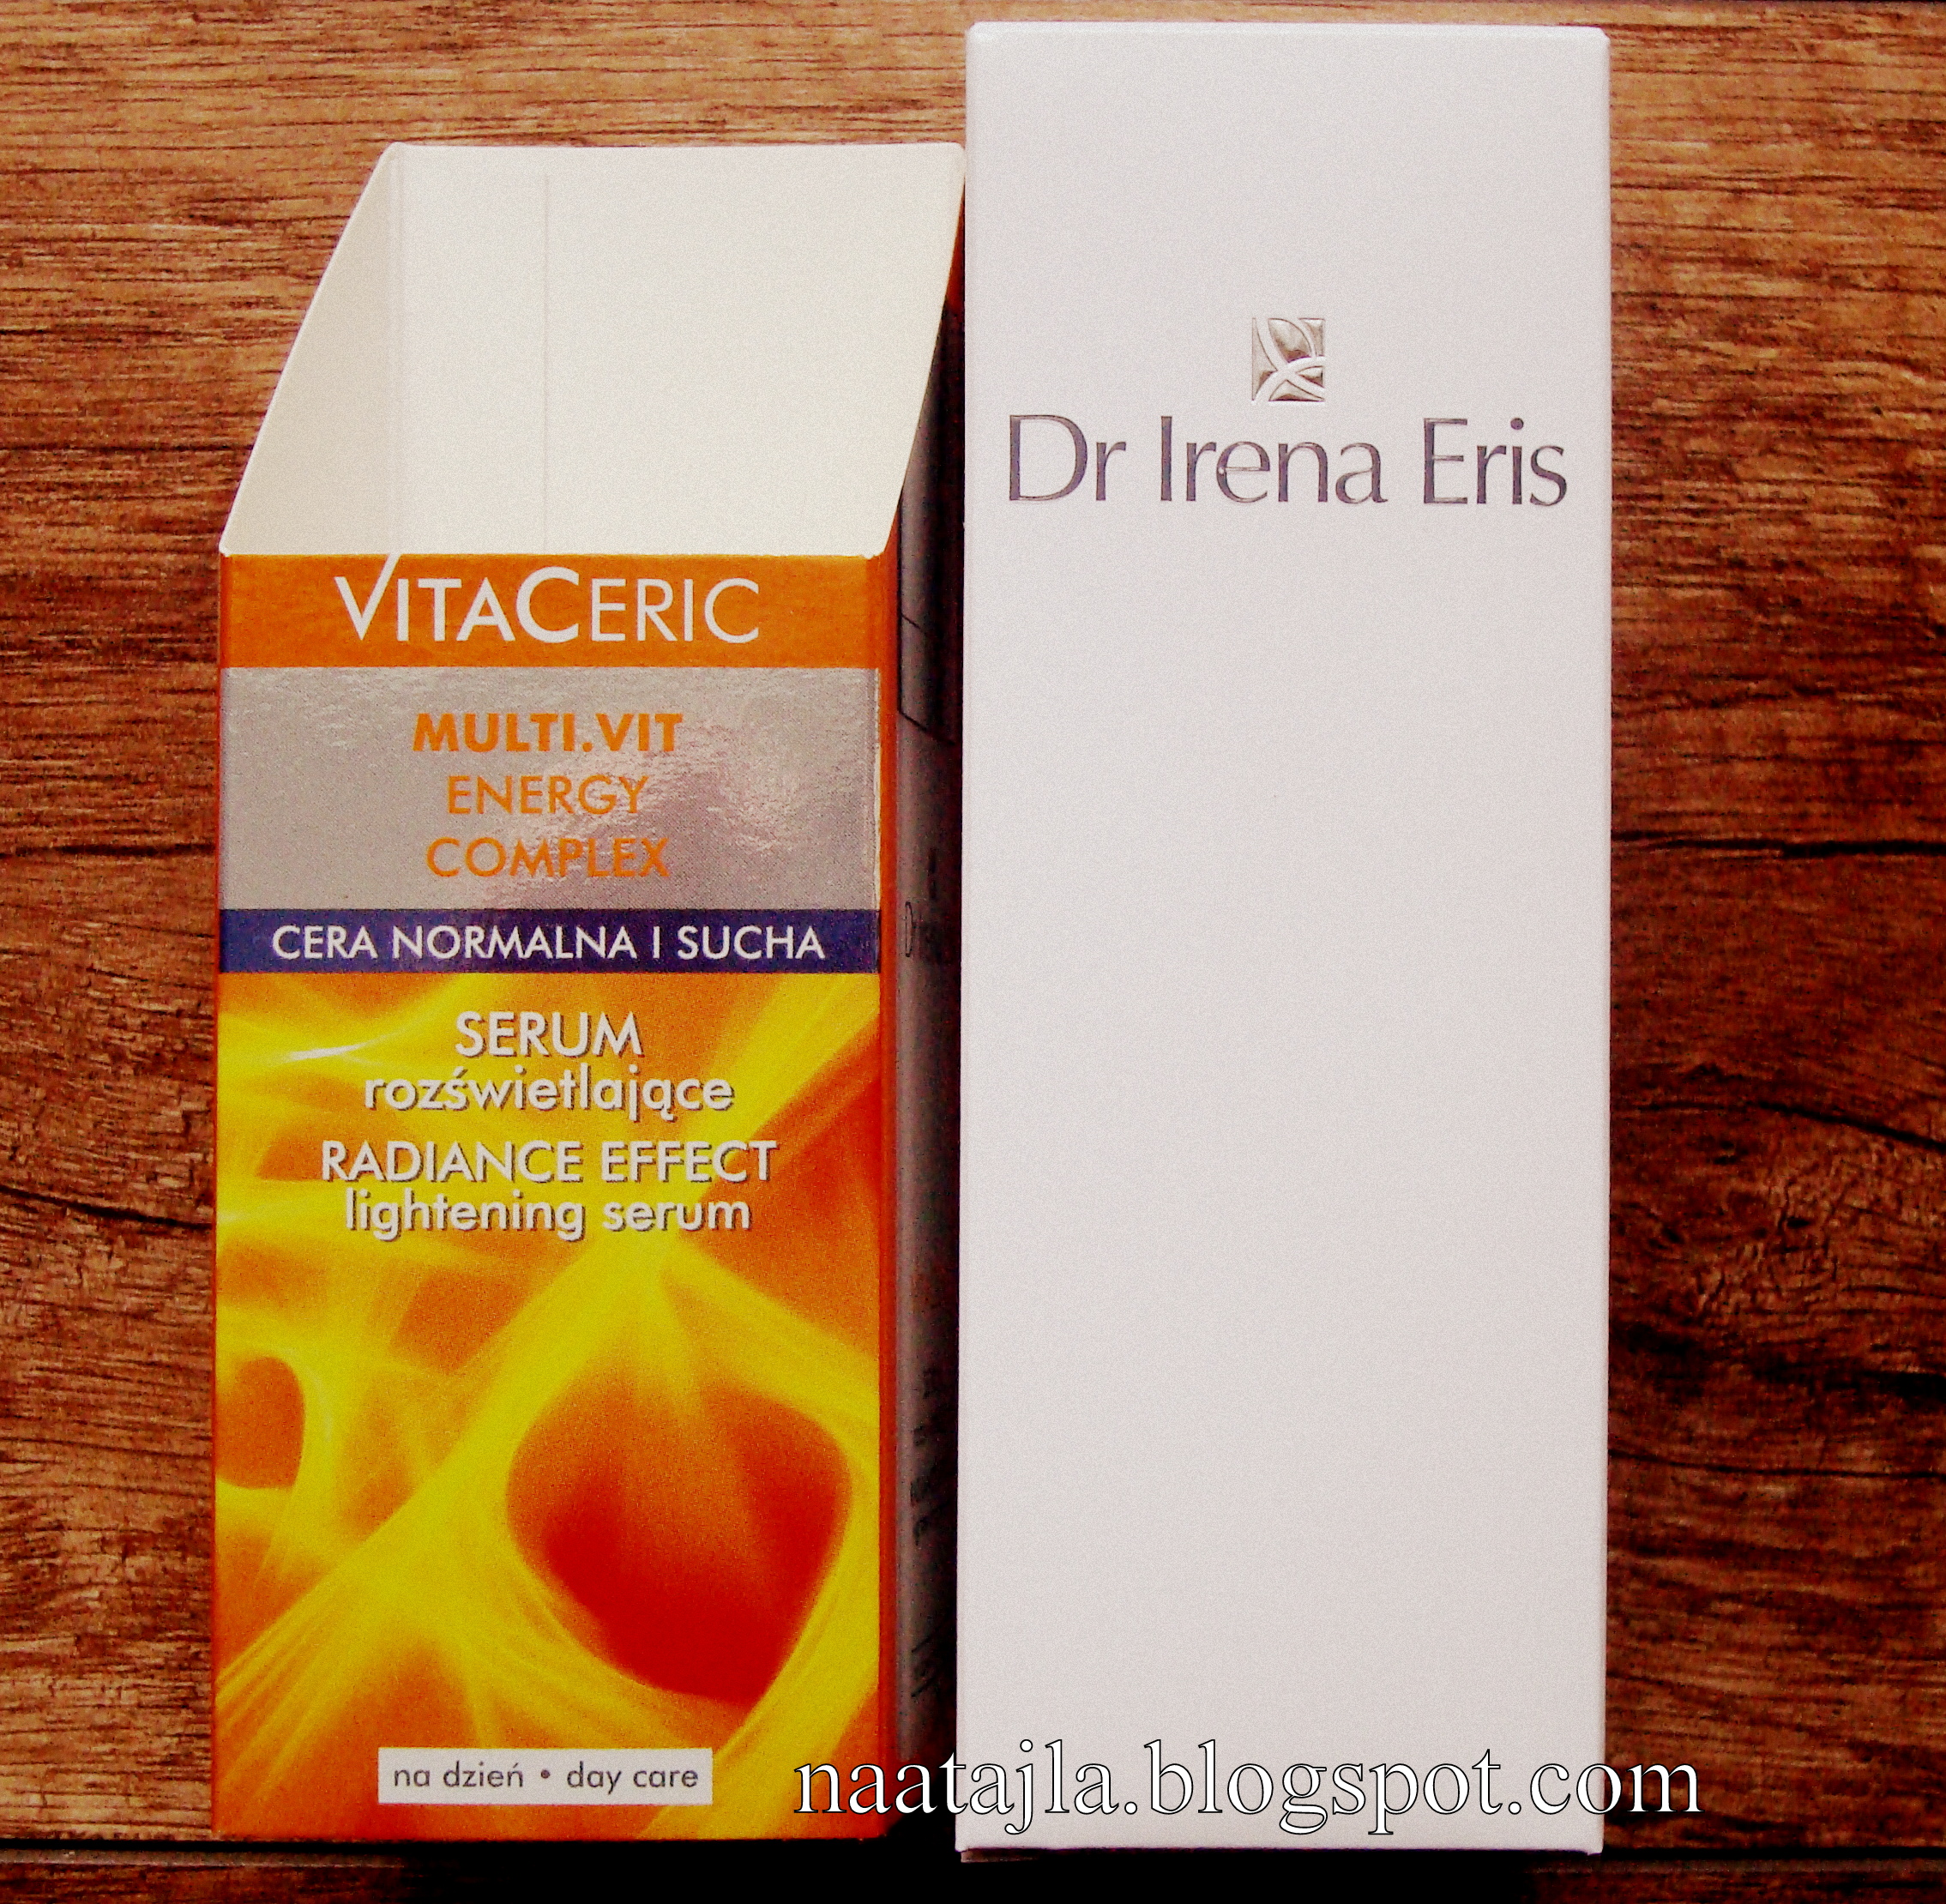 VitaCeris Dr Irena Eris serum rozświetlające